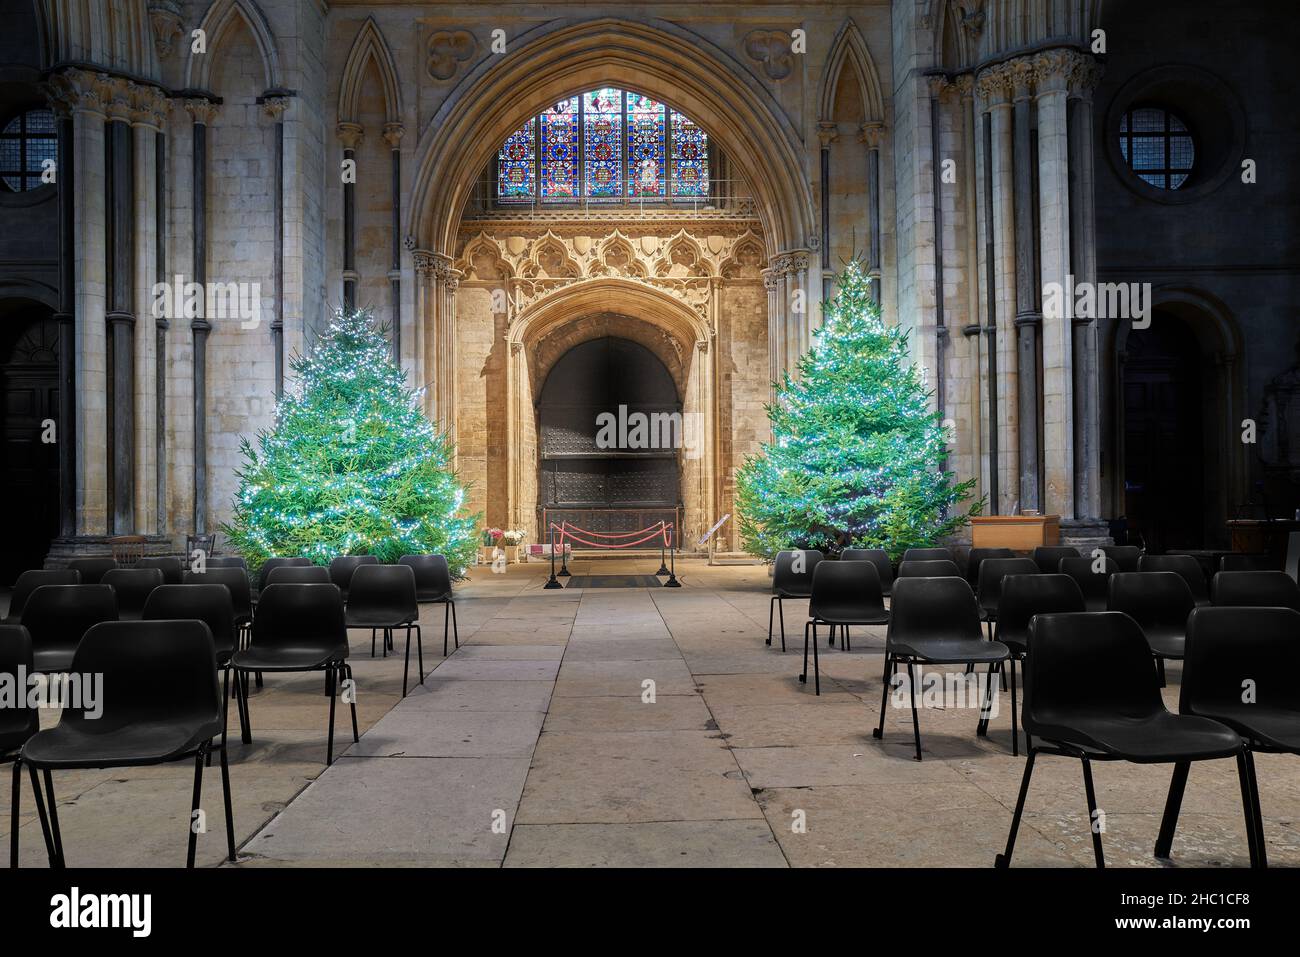 Coppia di scintillanti alberi di natale all'estremità ovest della navata nella cattedrale di Lincoln, Inghilterra, dicembre 2021. Foto Stock